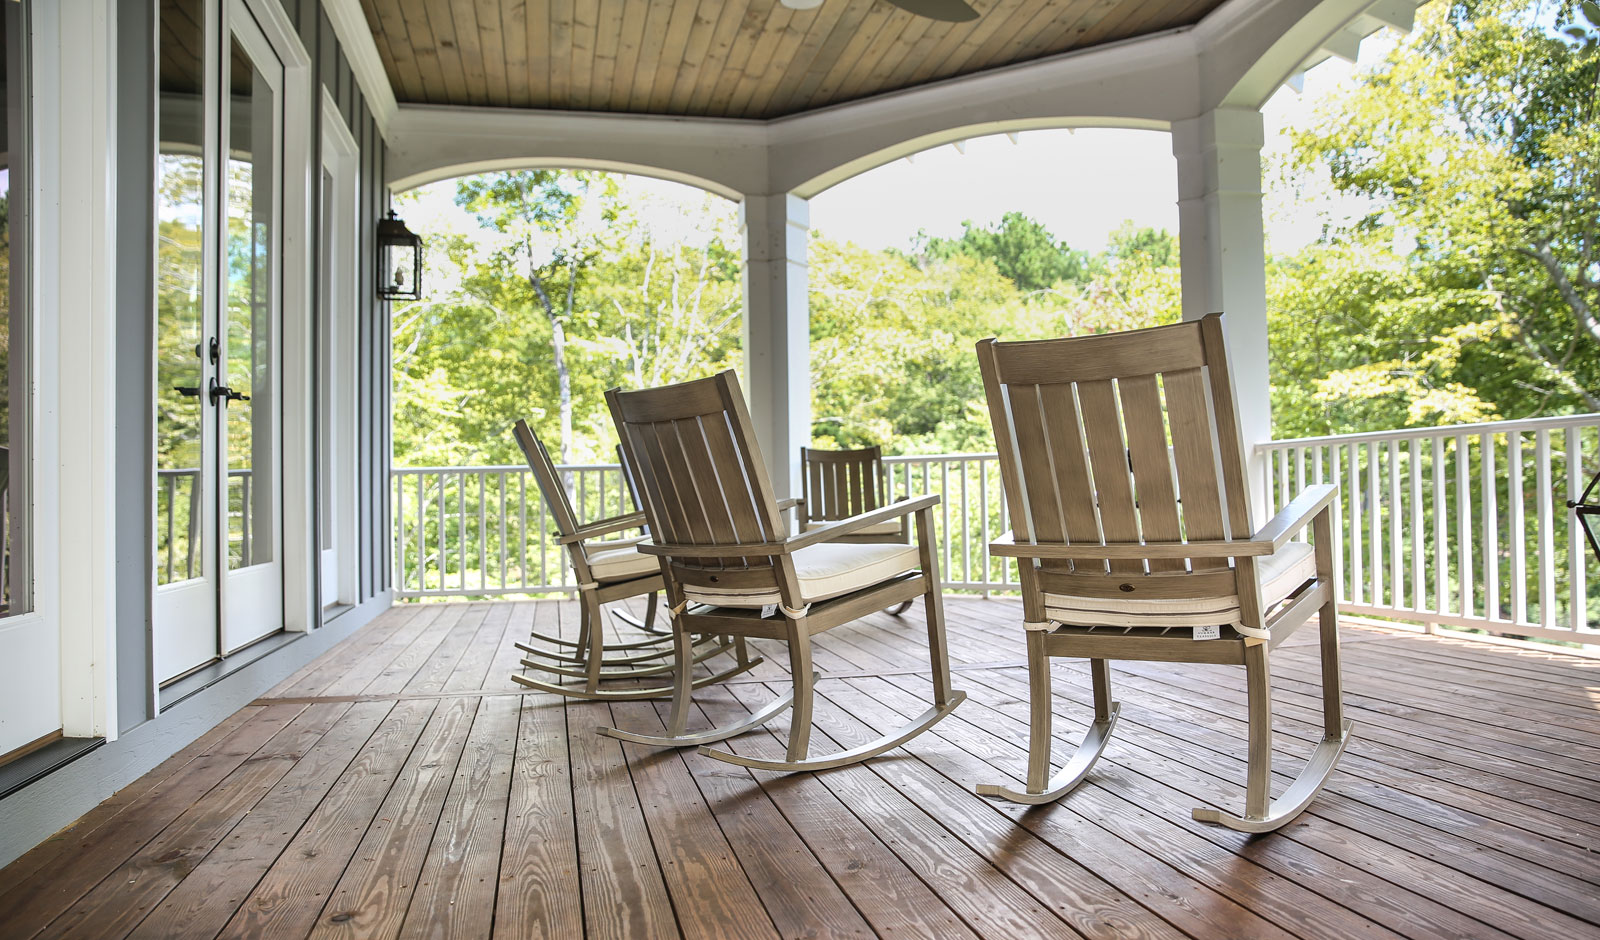 Chairs in a home veranda